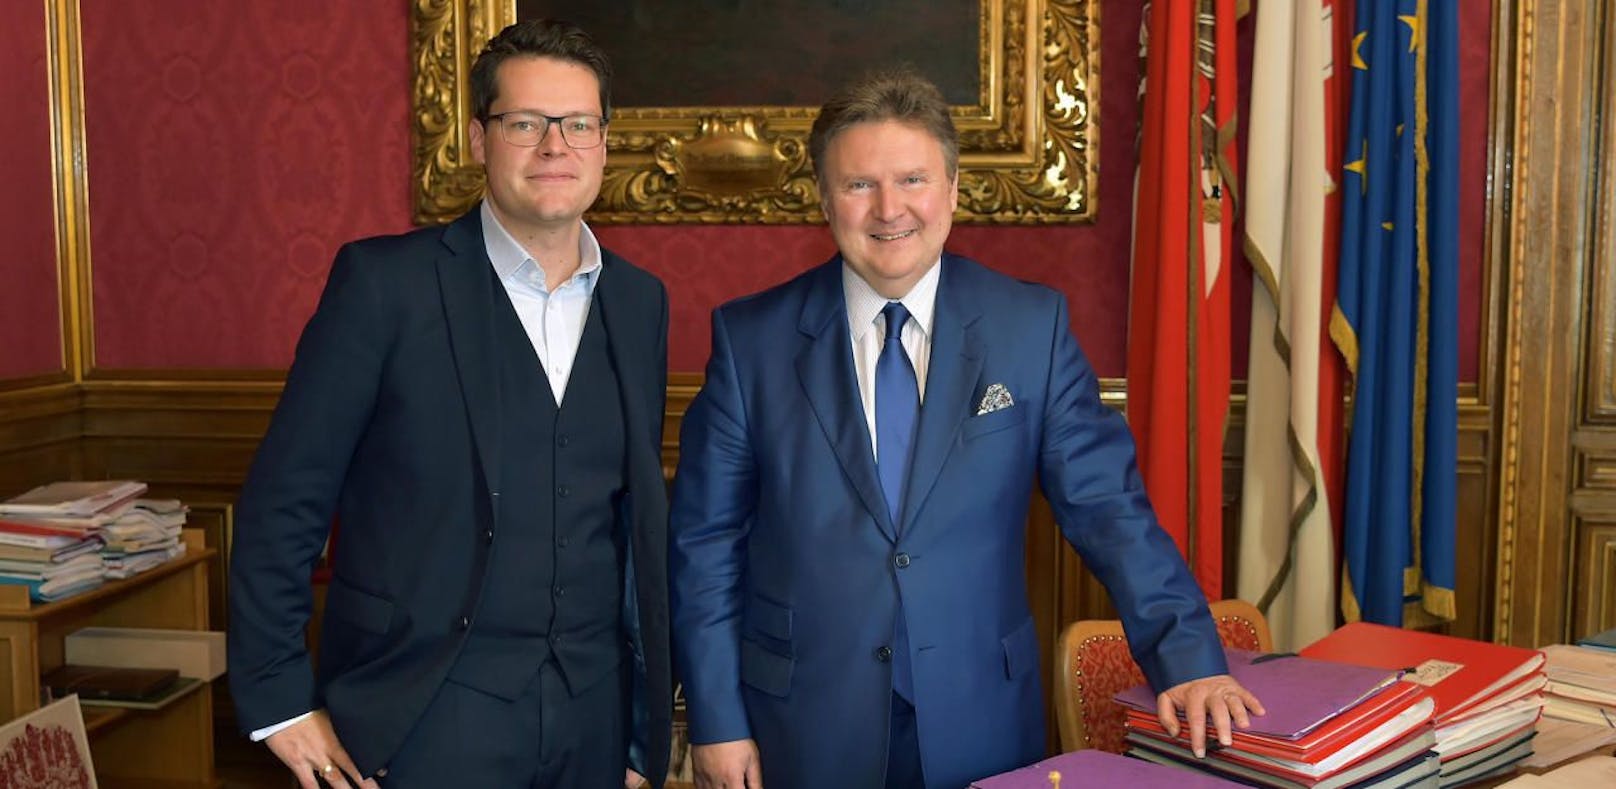 Bürgermeister Ludwig und Stadtrat Czernohorszky vermissen klare Linie im Bildungsbereich.